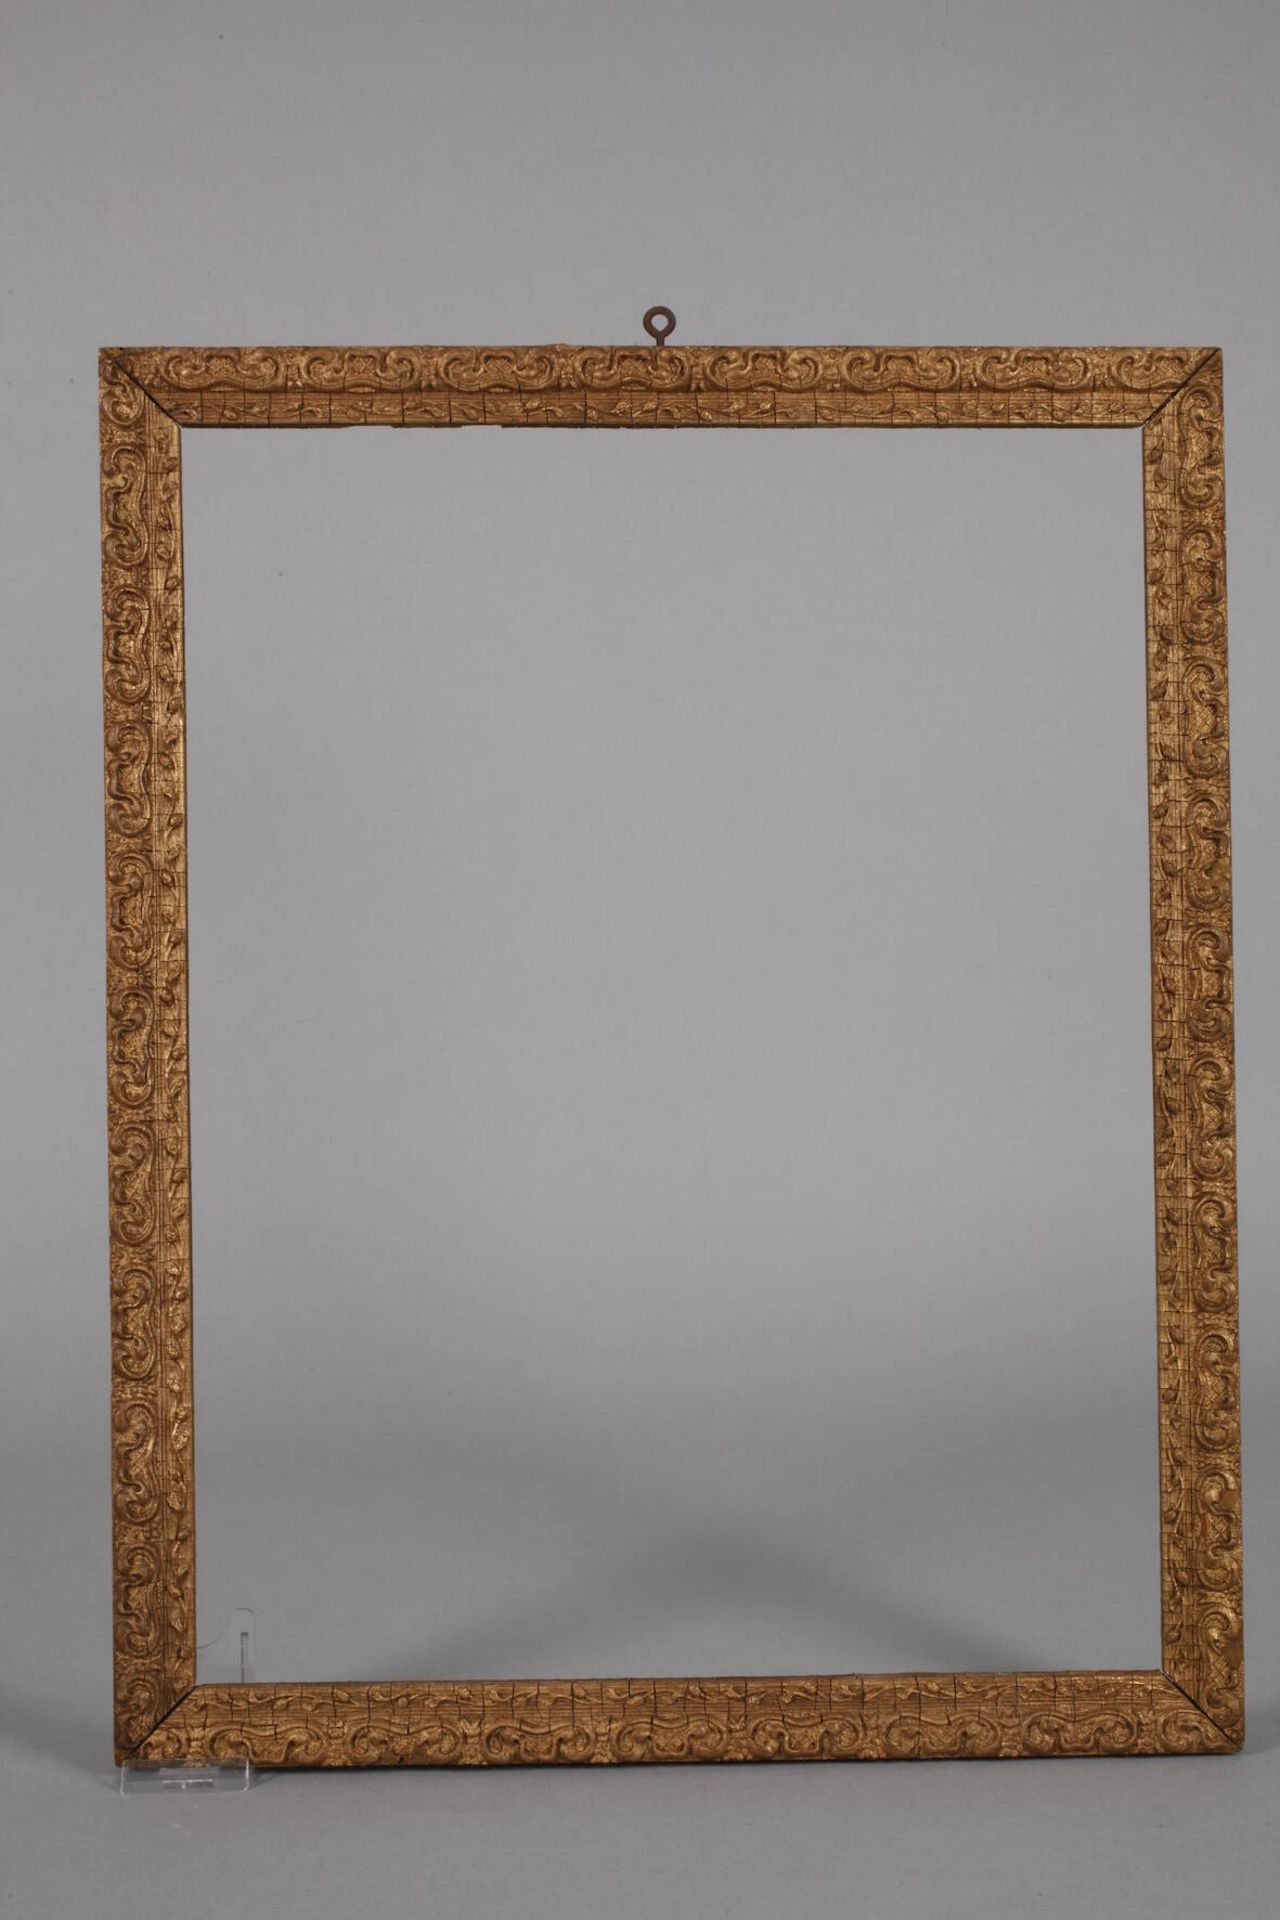 Drei StuckleistenEnde 19. Jh., ca. 2,5 cm breite, leicht steigend profilierte gestuckte Holzleisten, - Bild 2 aus 5